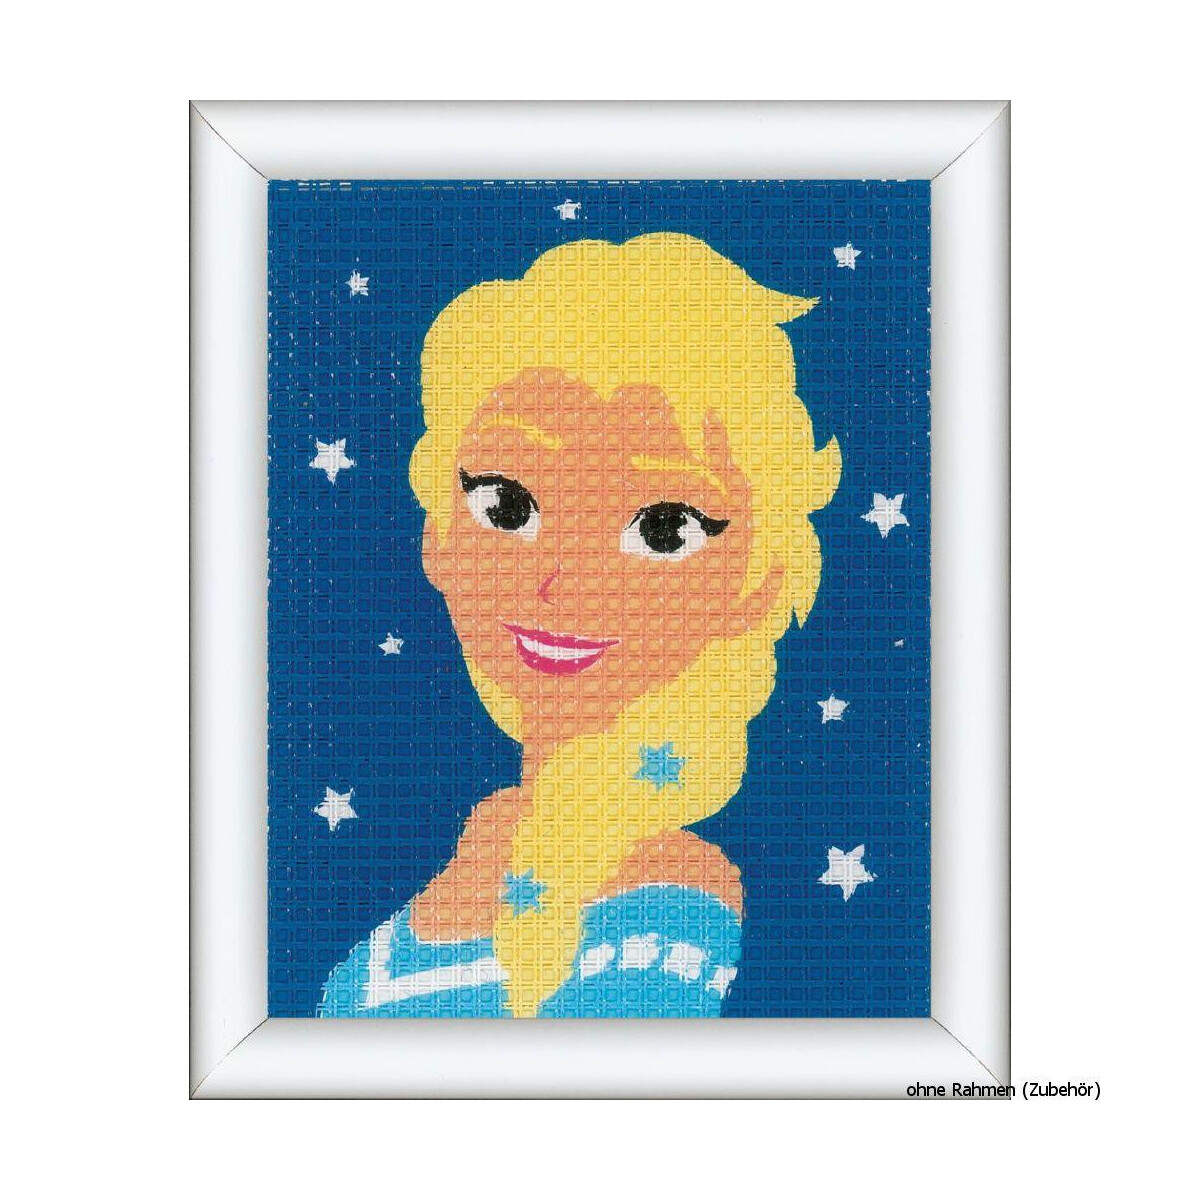 Vervaco stitch Kit Disney Frozen Elsa, stamped, DIY